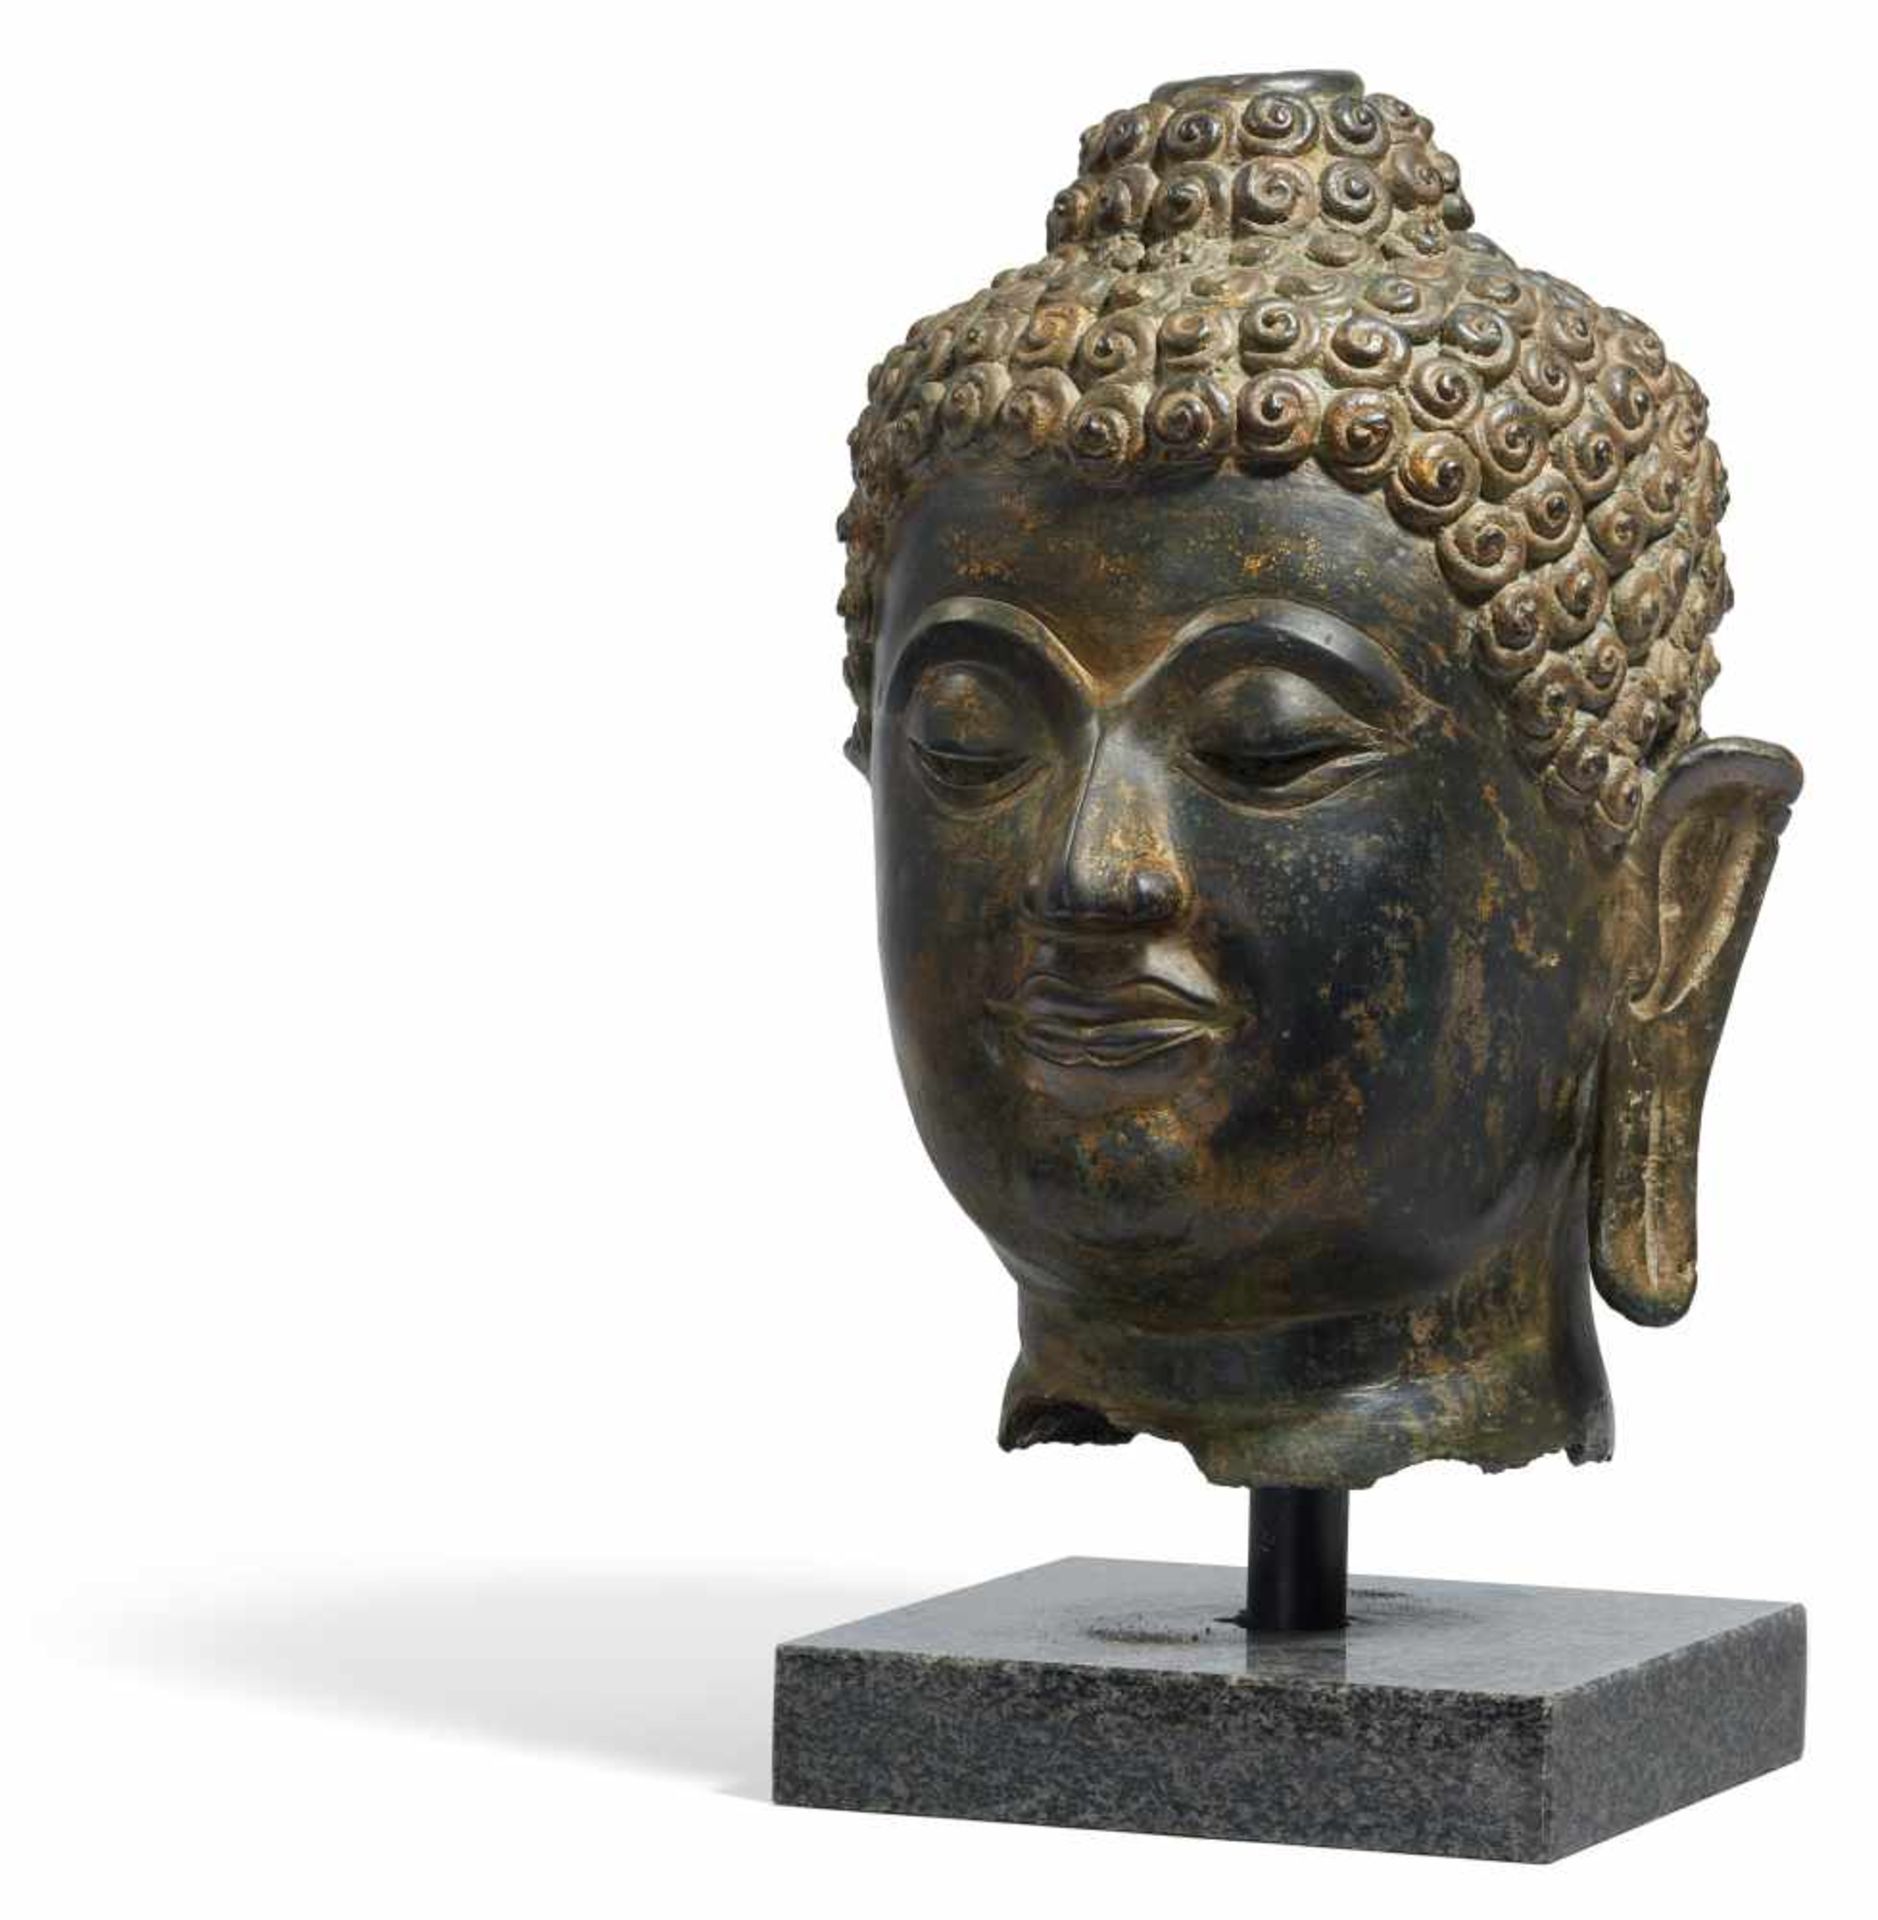 GROßER BUDDHAKOPF. Thailand. Chieng Seng-Stil. 15./16. Jh. Bronze mit dunkler Patina. Im